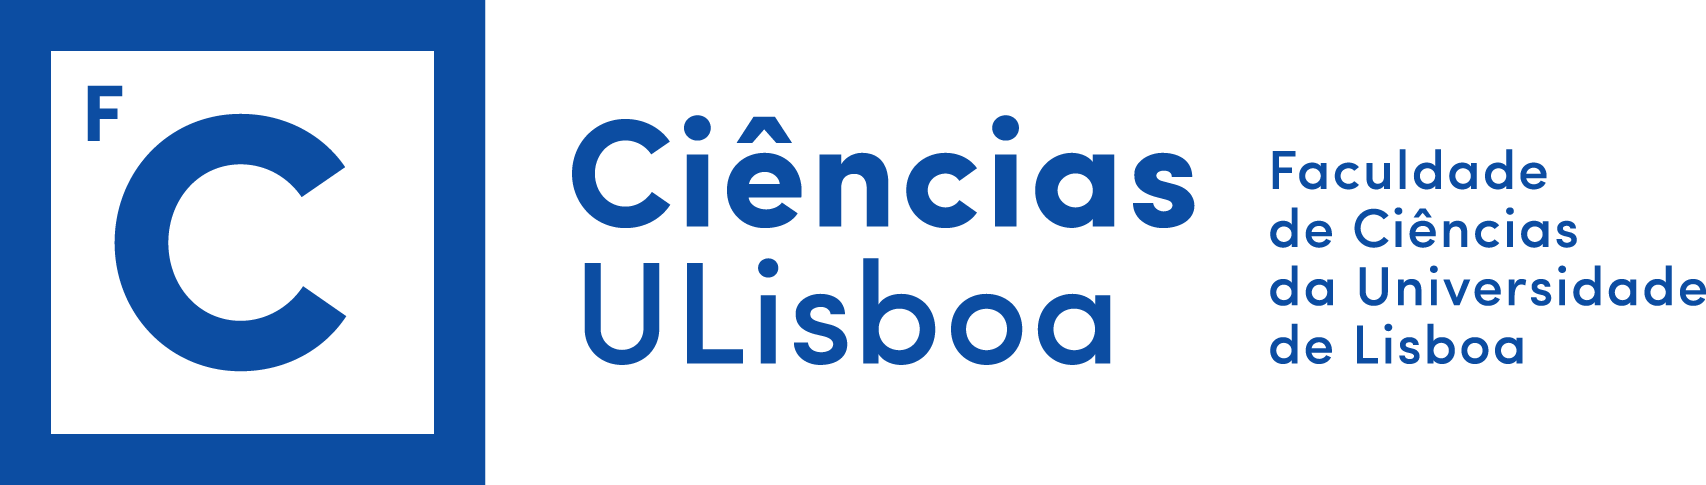 Dep. de Informática, Faculdade de Ciências da Universidade de Lisboa